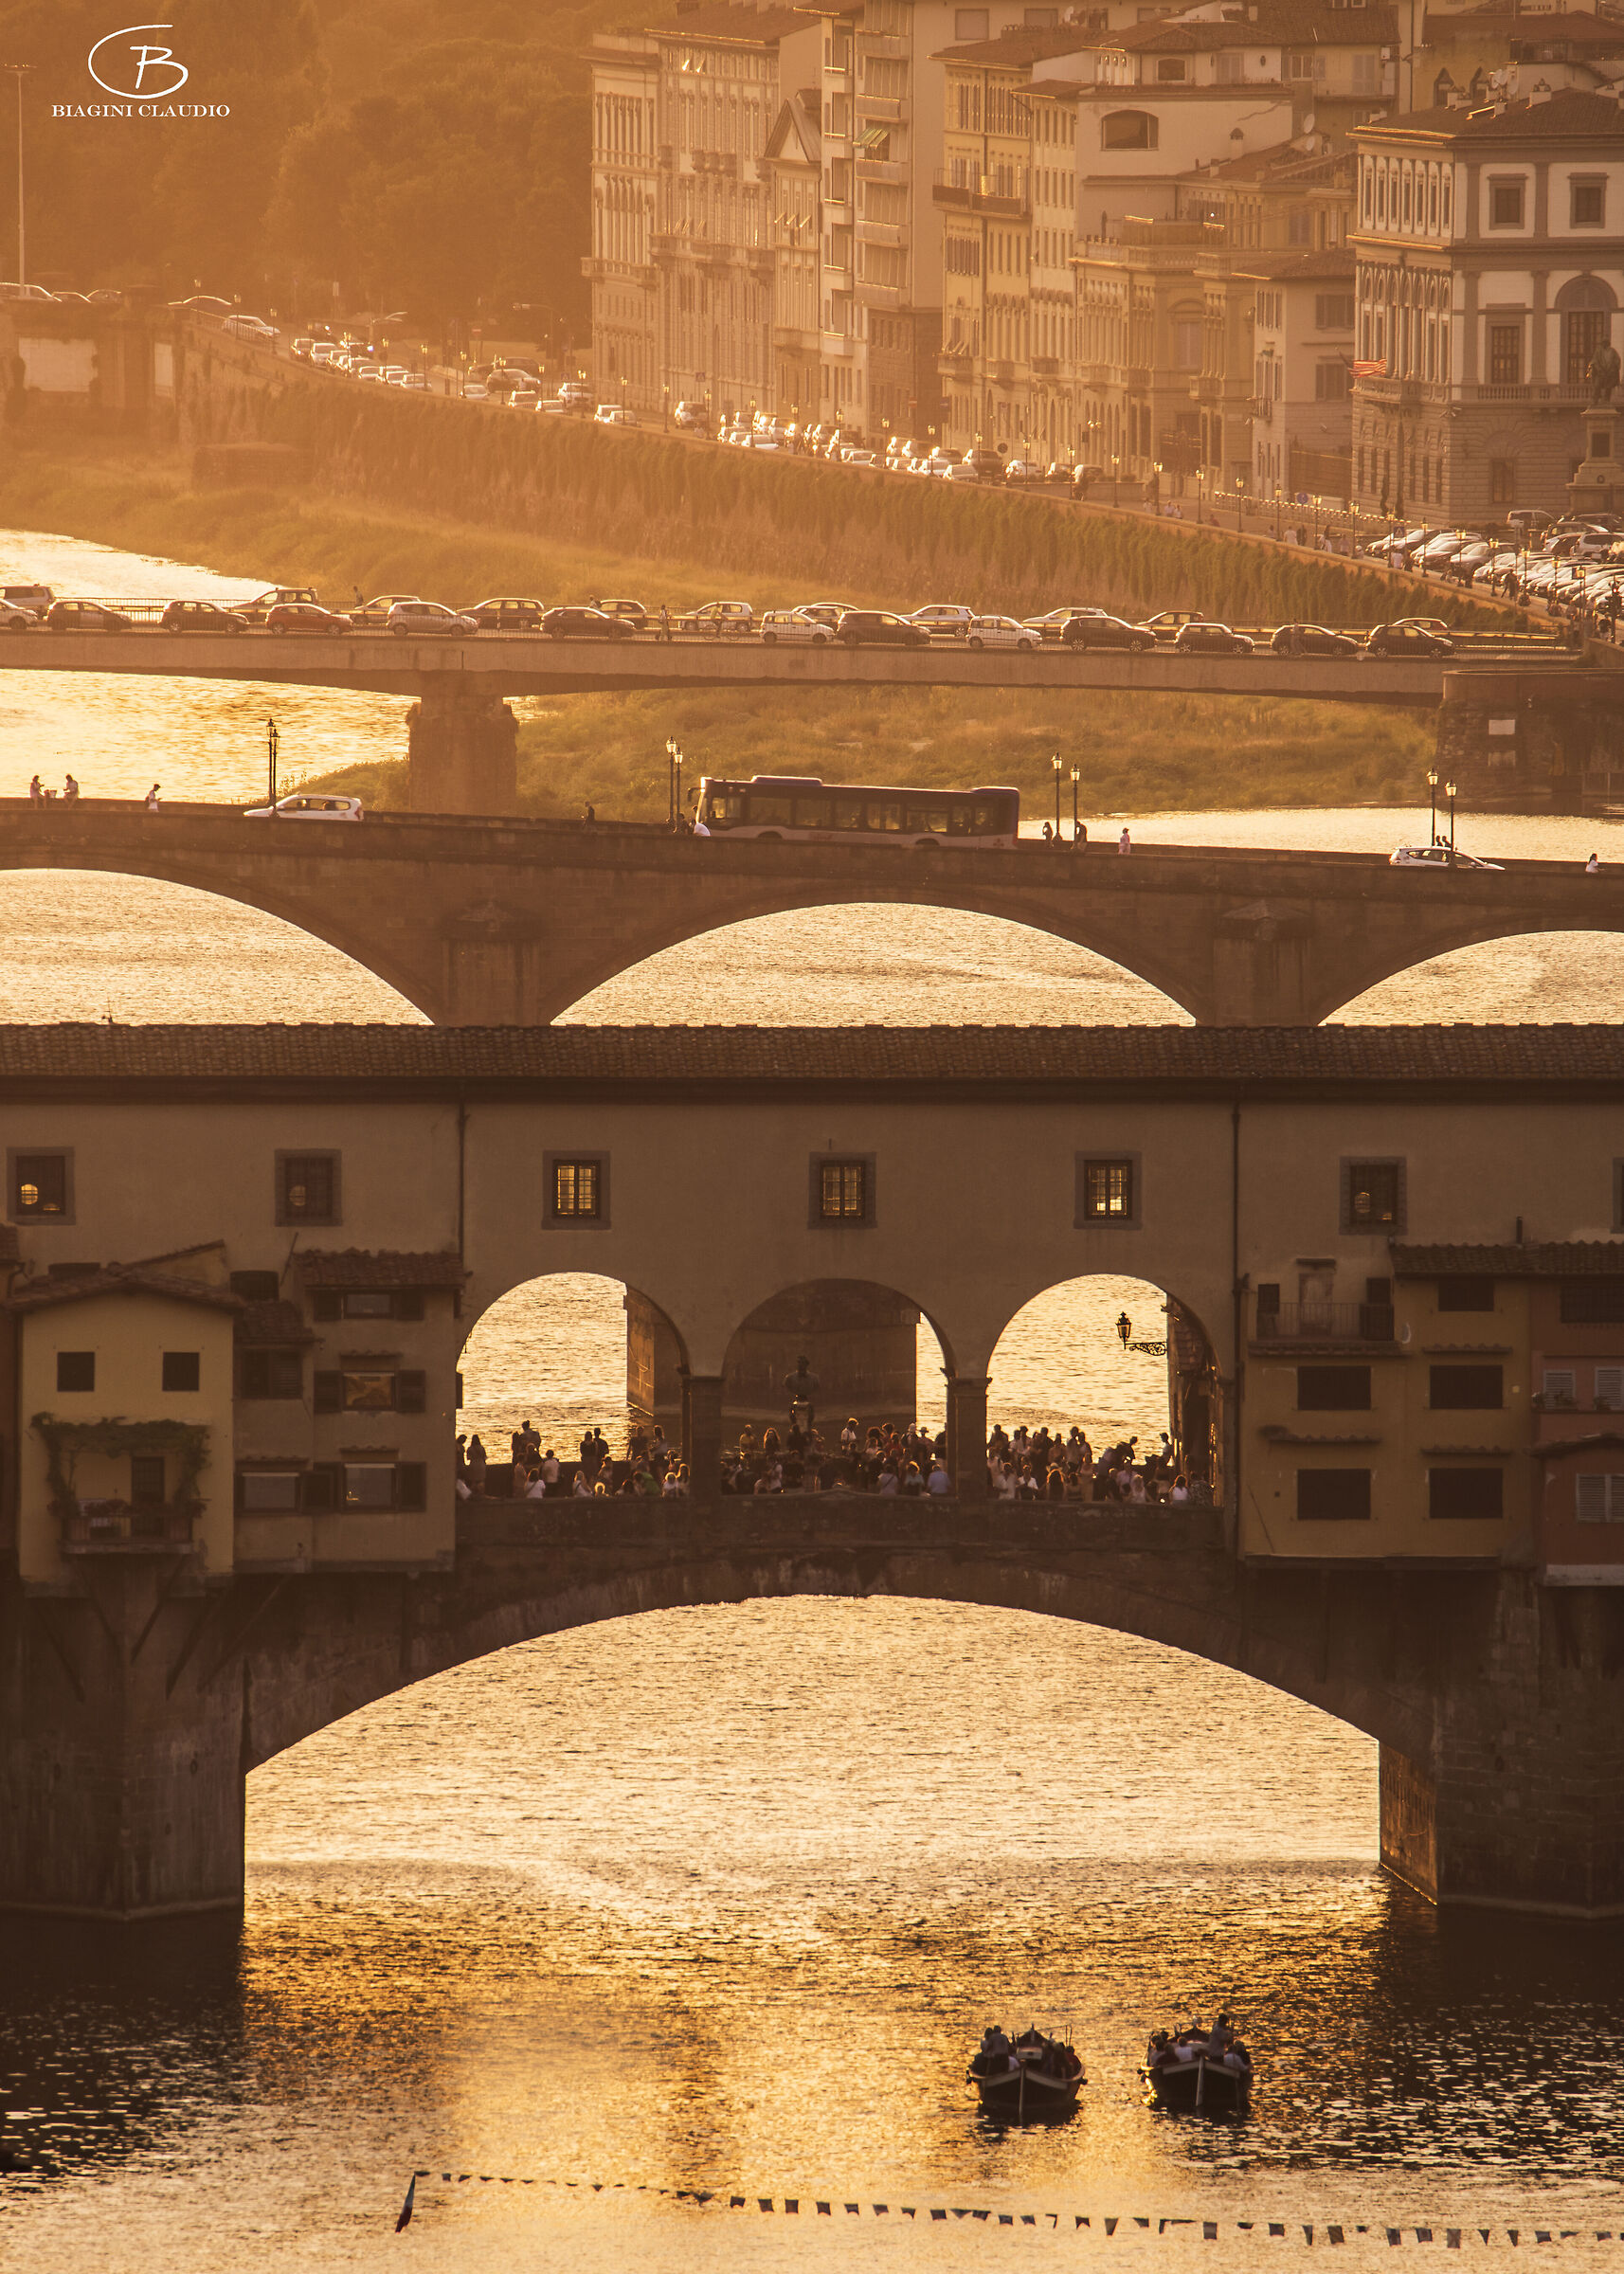 Traffico urbano nei dintorni del Ponte Vecchio...